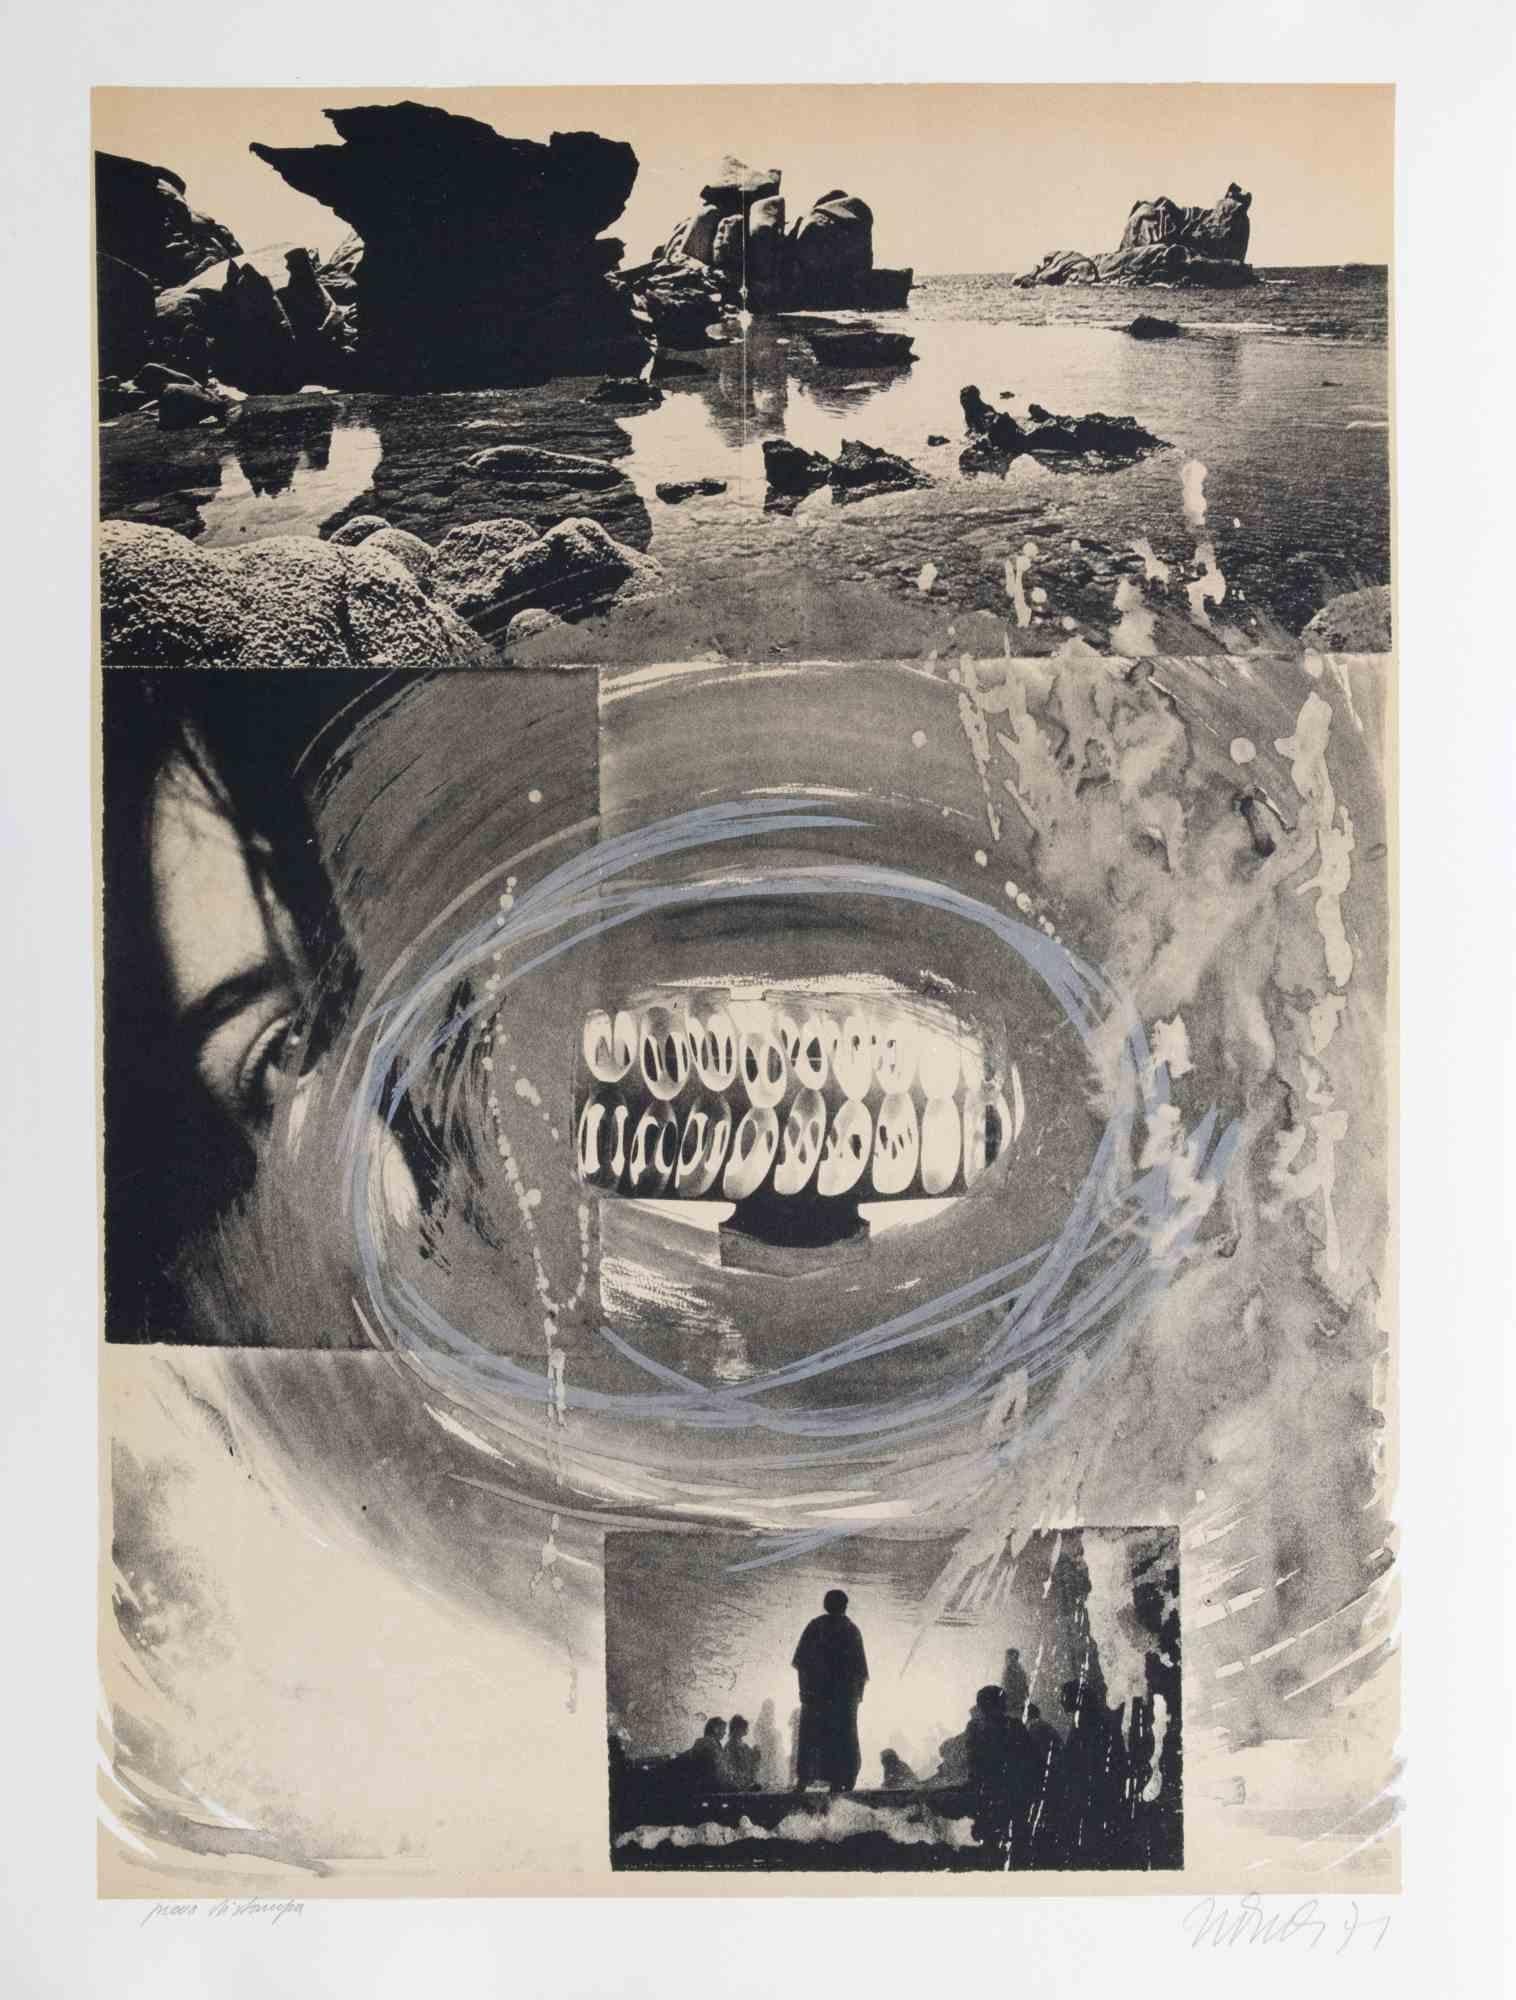 The Mouth of the Time ist ein zeitgenössisches Kunstwerk, das 1971 von Nani Tedeschi realisiert wurde.

Schwarz-Weiß-Lithographie.

Am unteren Rand handsigniert und datiert.

Künstlerischer Beweis